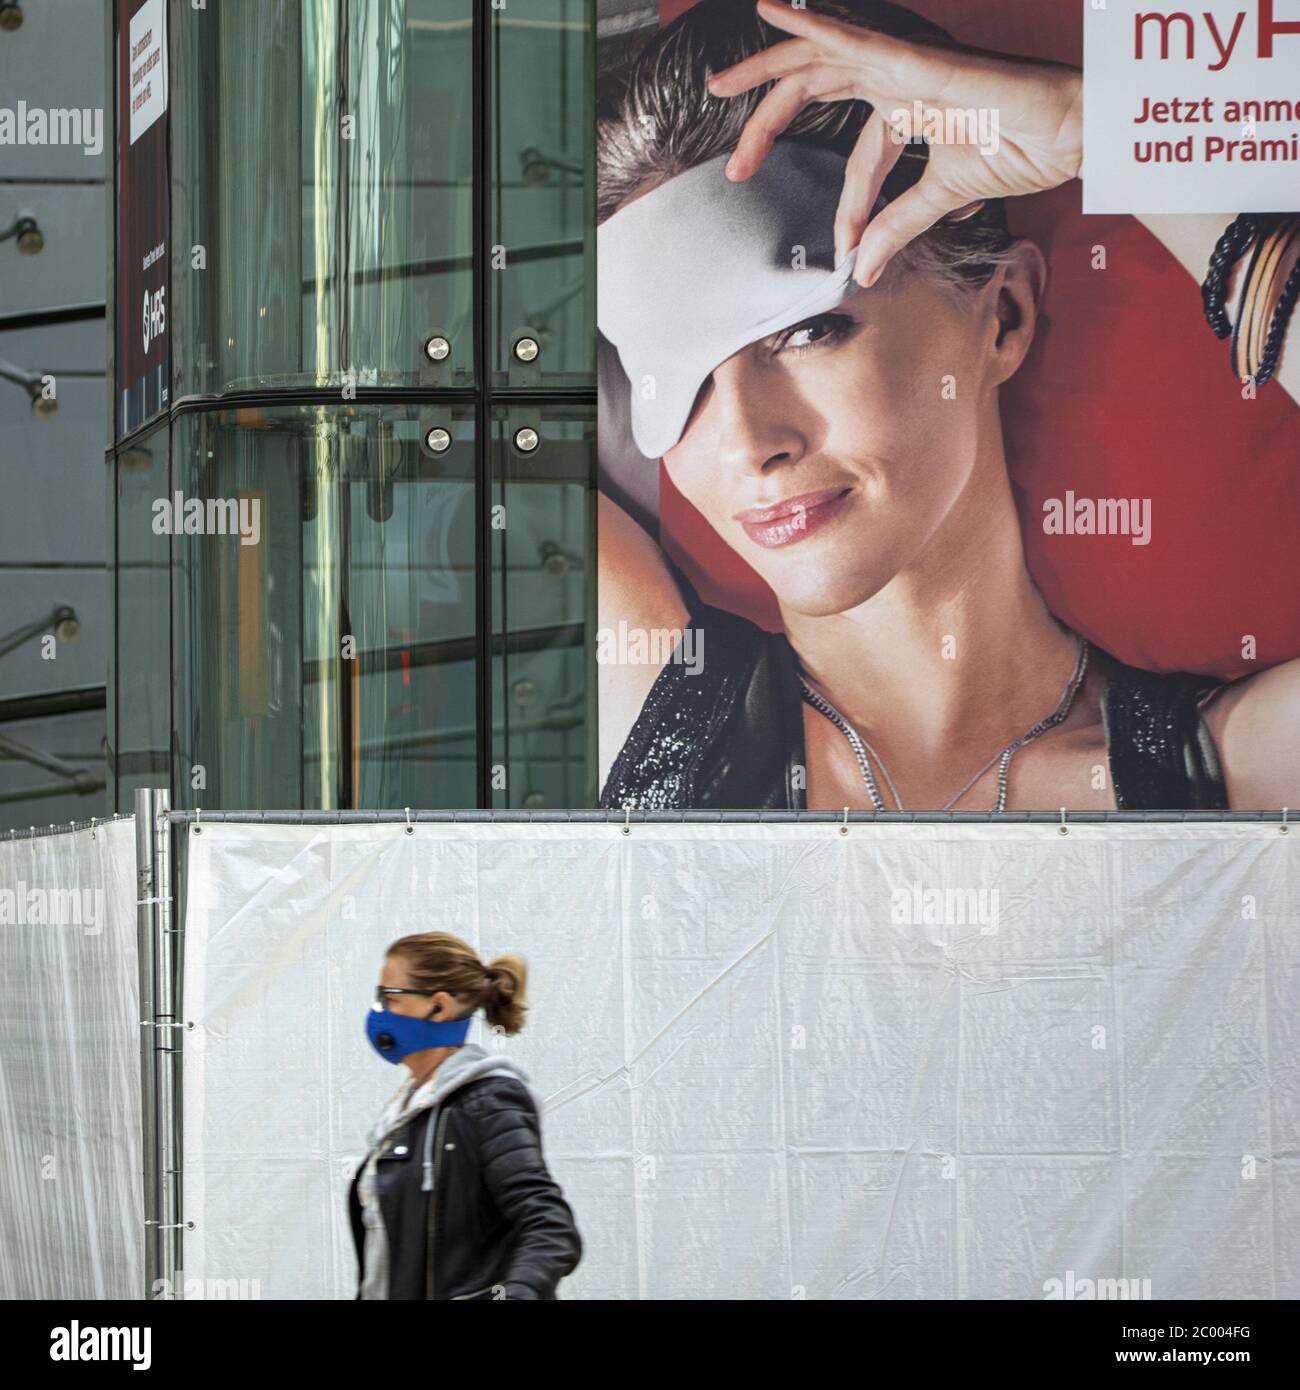 Ein Passagier mit Gesichtsmaske geht während der Sperrung durch das COVID-19-Virus in einer Schlafmaske am fast leeren Frankfurter Flughafen vorbei. Weltweit ist die Luftverkehrsbranche stark von dem massiven Rückgang des Verkehrs betroffen. Stockfoto